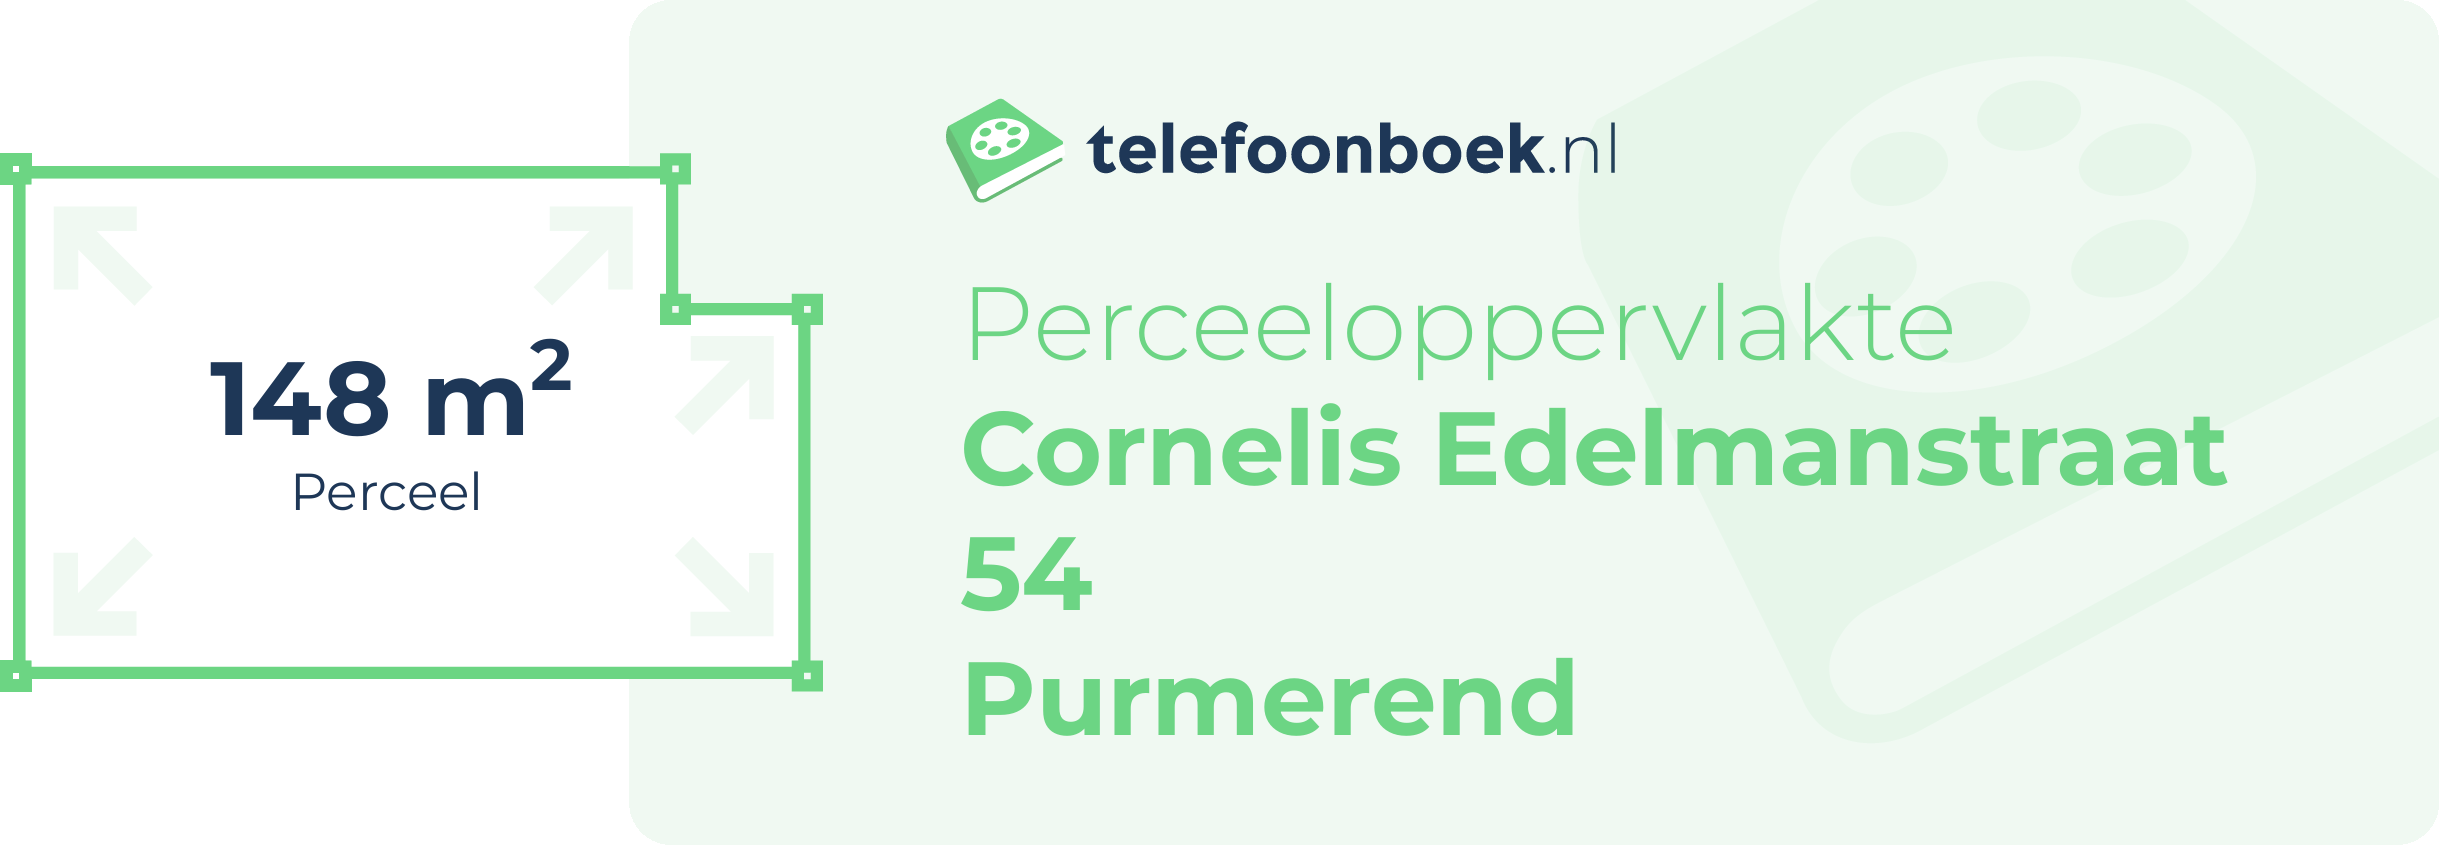 Perceeloppervlakte Cornelis Edelmanstraat 54 Purmerend